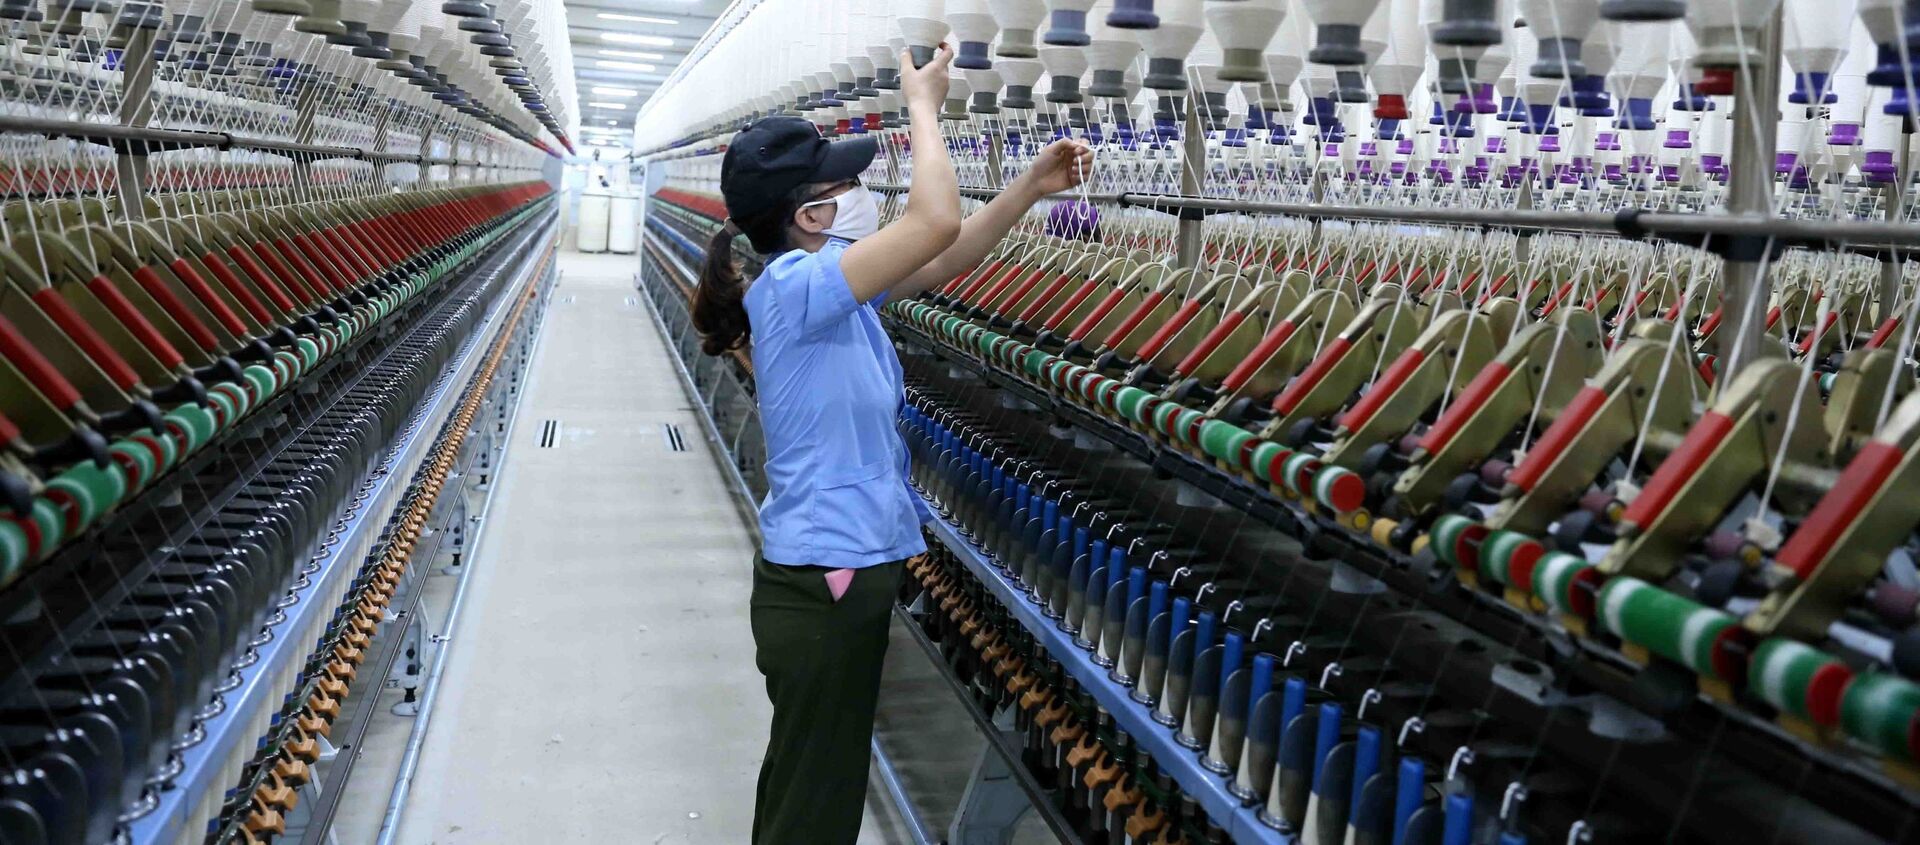 Công ty Cổ phần VinaTex Hồng Lĩnh tại cụm công nghiệp Hồng Lĩnh (Hà Tĩnh) sản xuất và tiêu thụ trên 3.500 tấn sản phẩm sợi tại thị trường trong nước và xuất khẩu.  - Sputnik Việt Nam, 1920, 31.12.2020